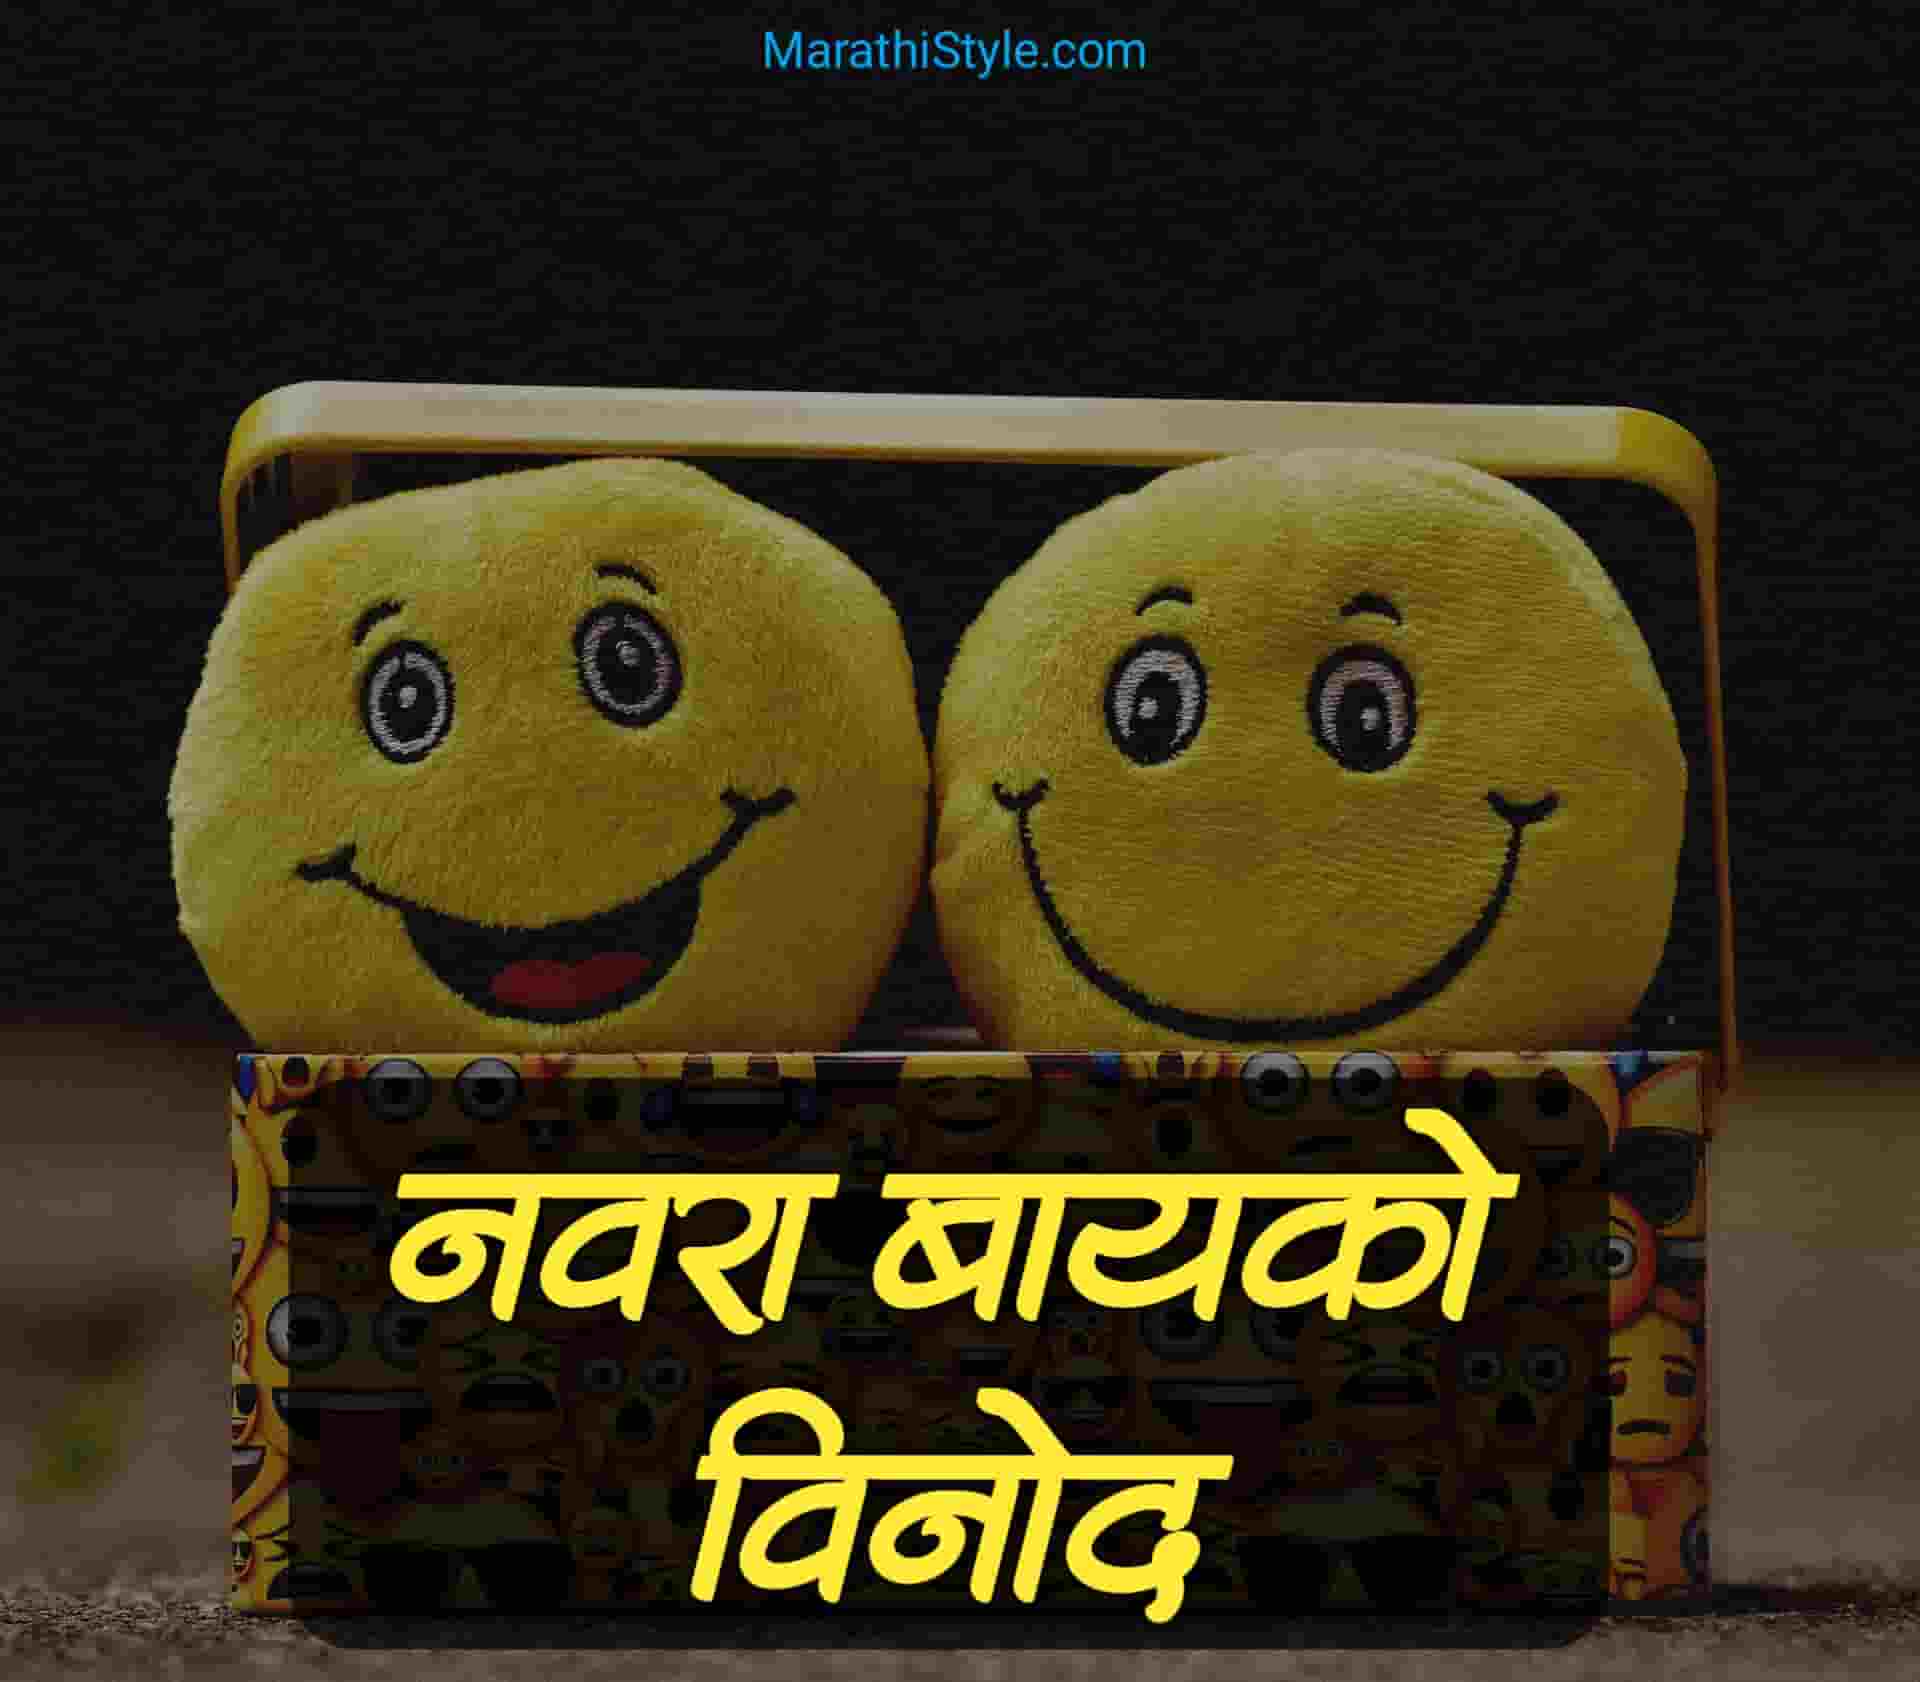 Marathi Jokes Archives - Marathi Style